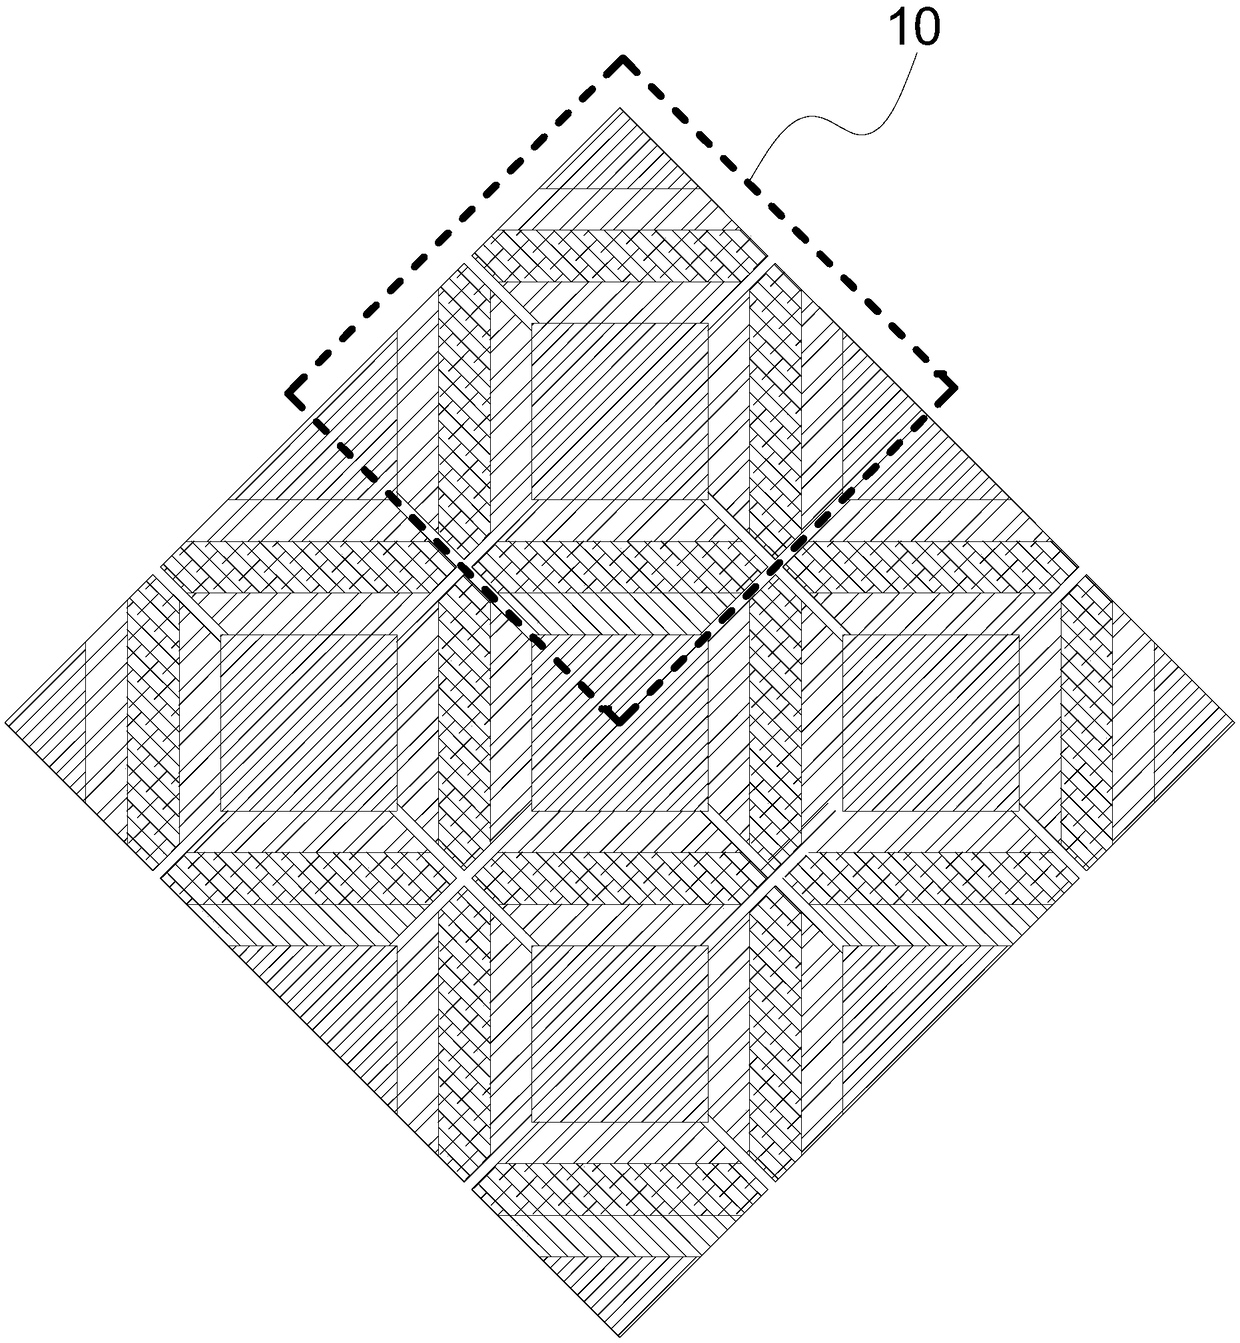 Pixel arrangement structure and display panel